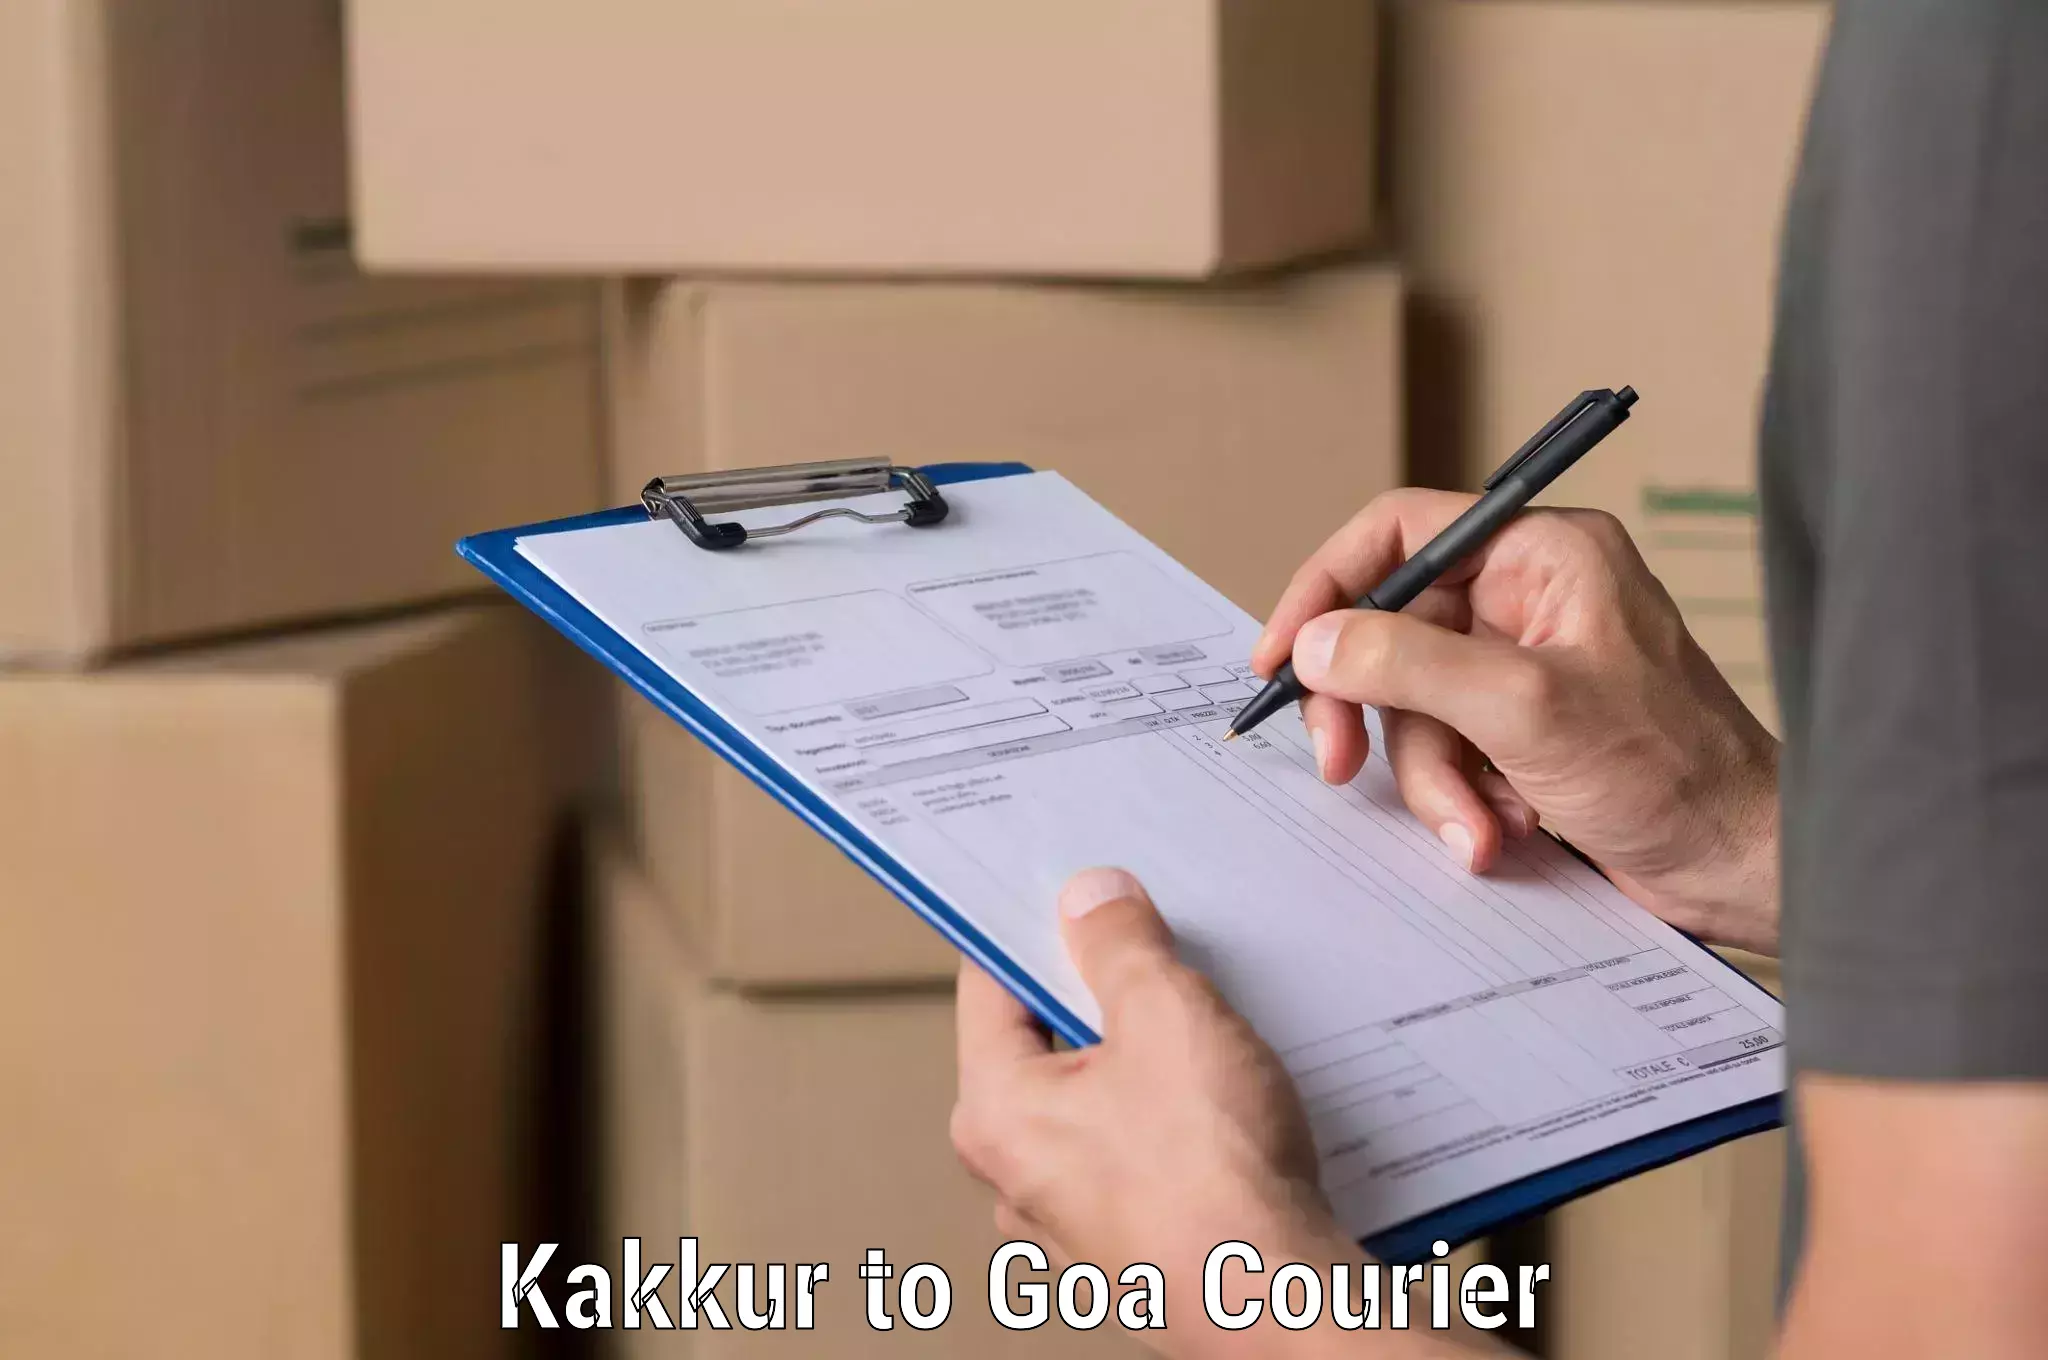 Sustainable shipping practices Kakkur to Goa